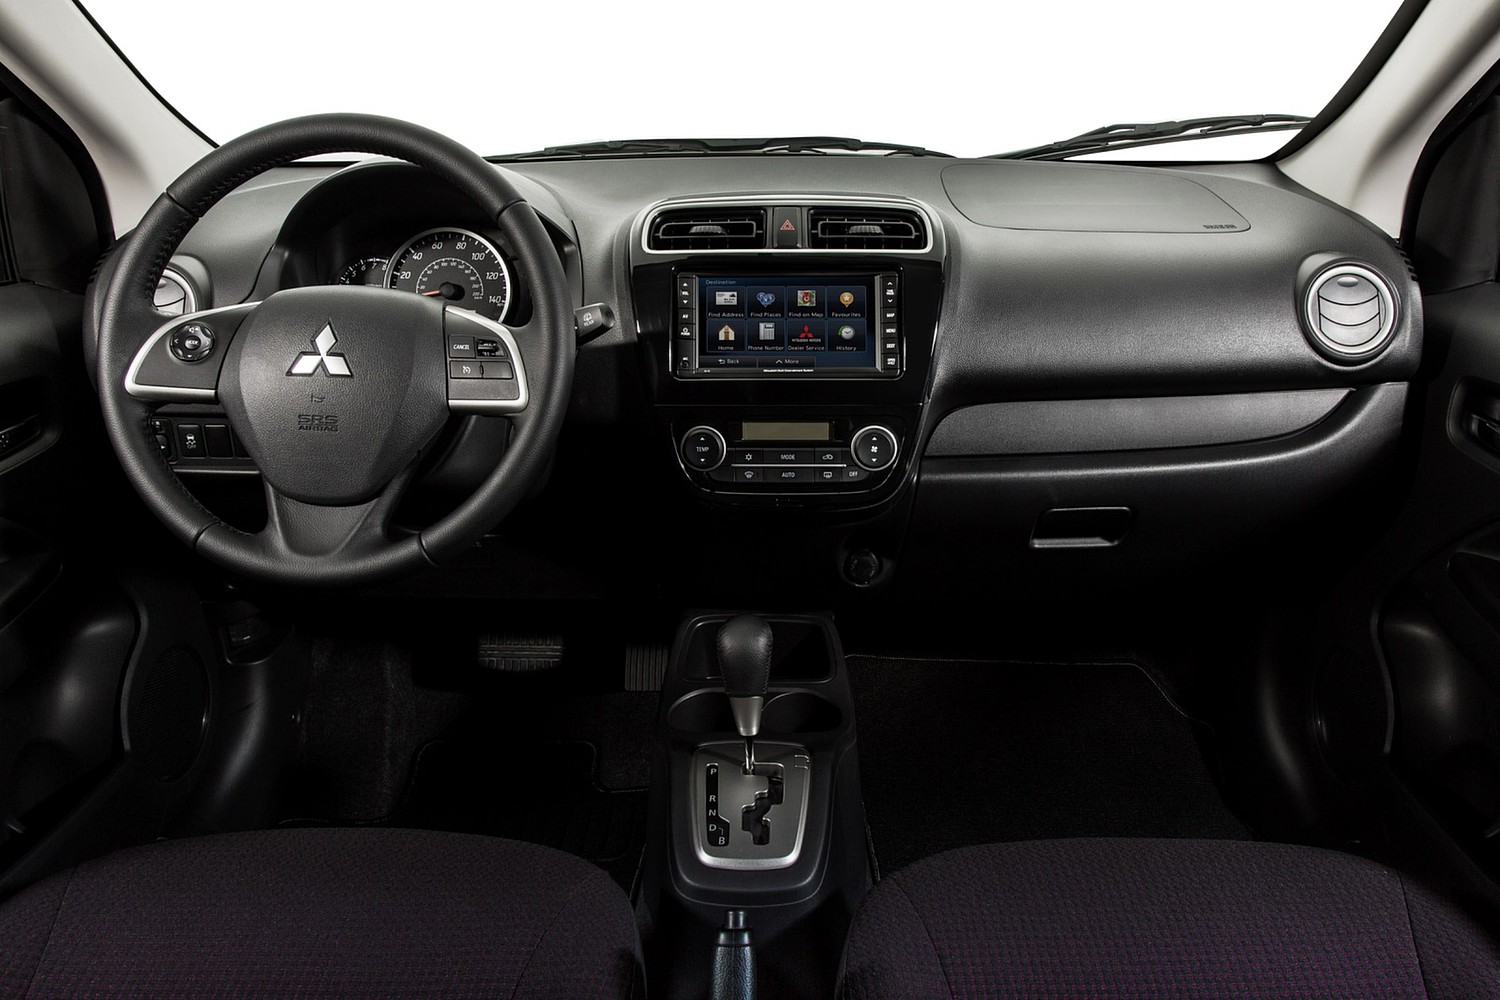 Mitsubishi Mirage ES 4dr Hatchback Dashboard (2014 model year shown)